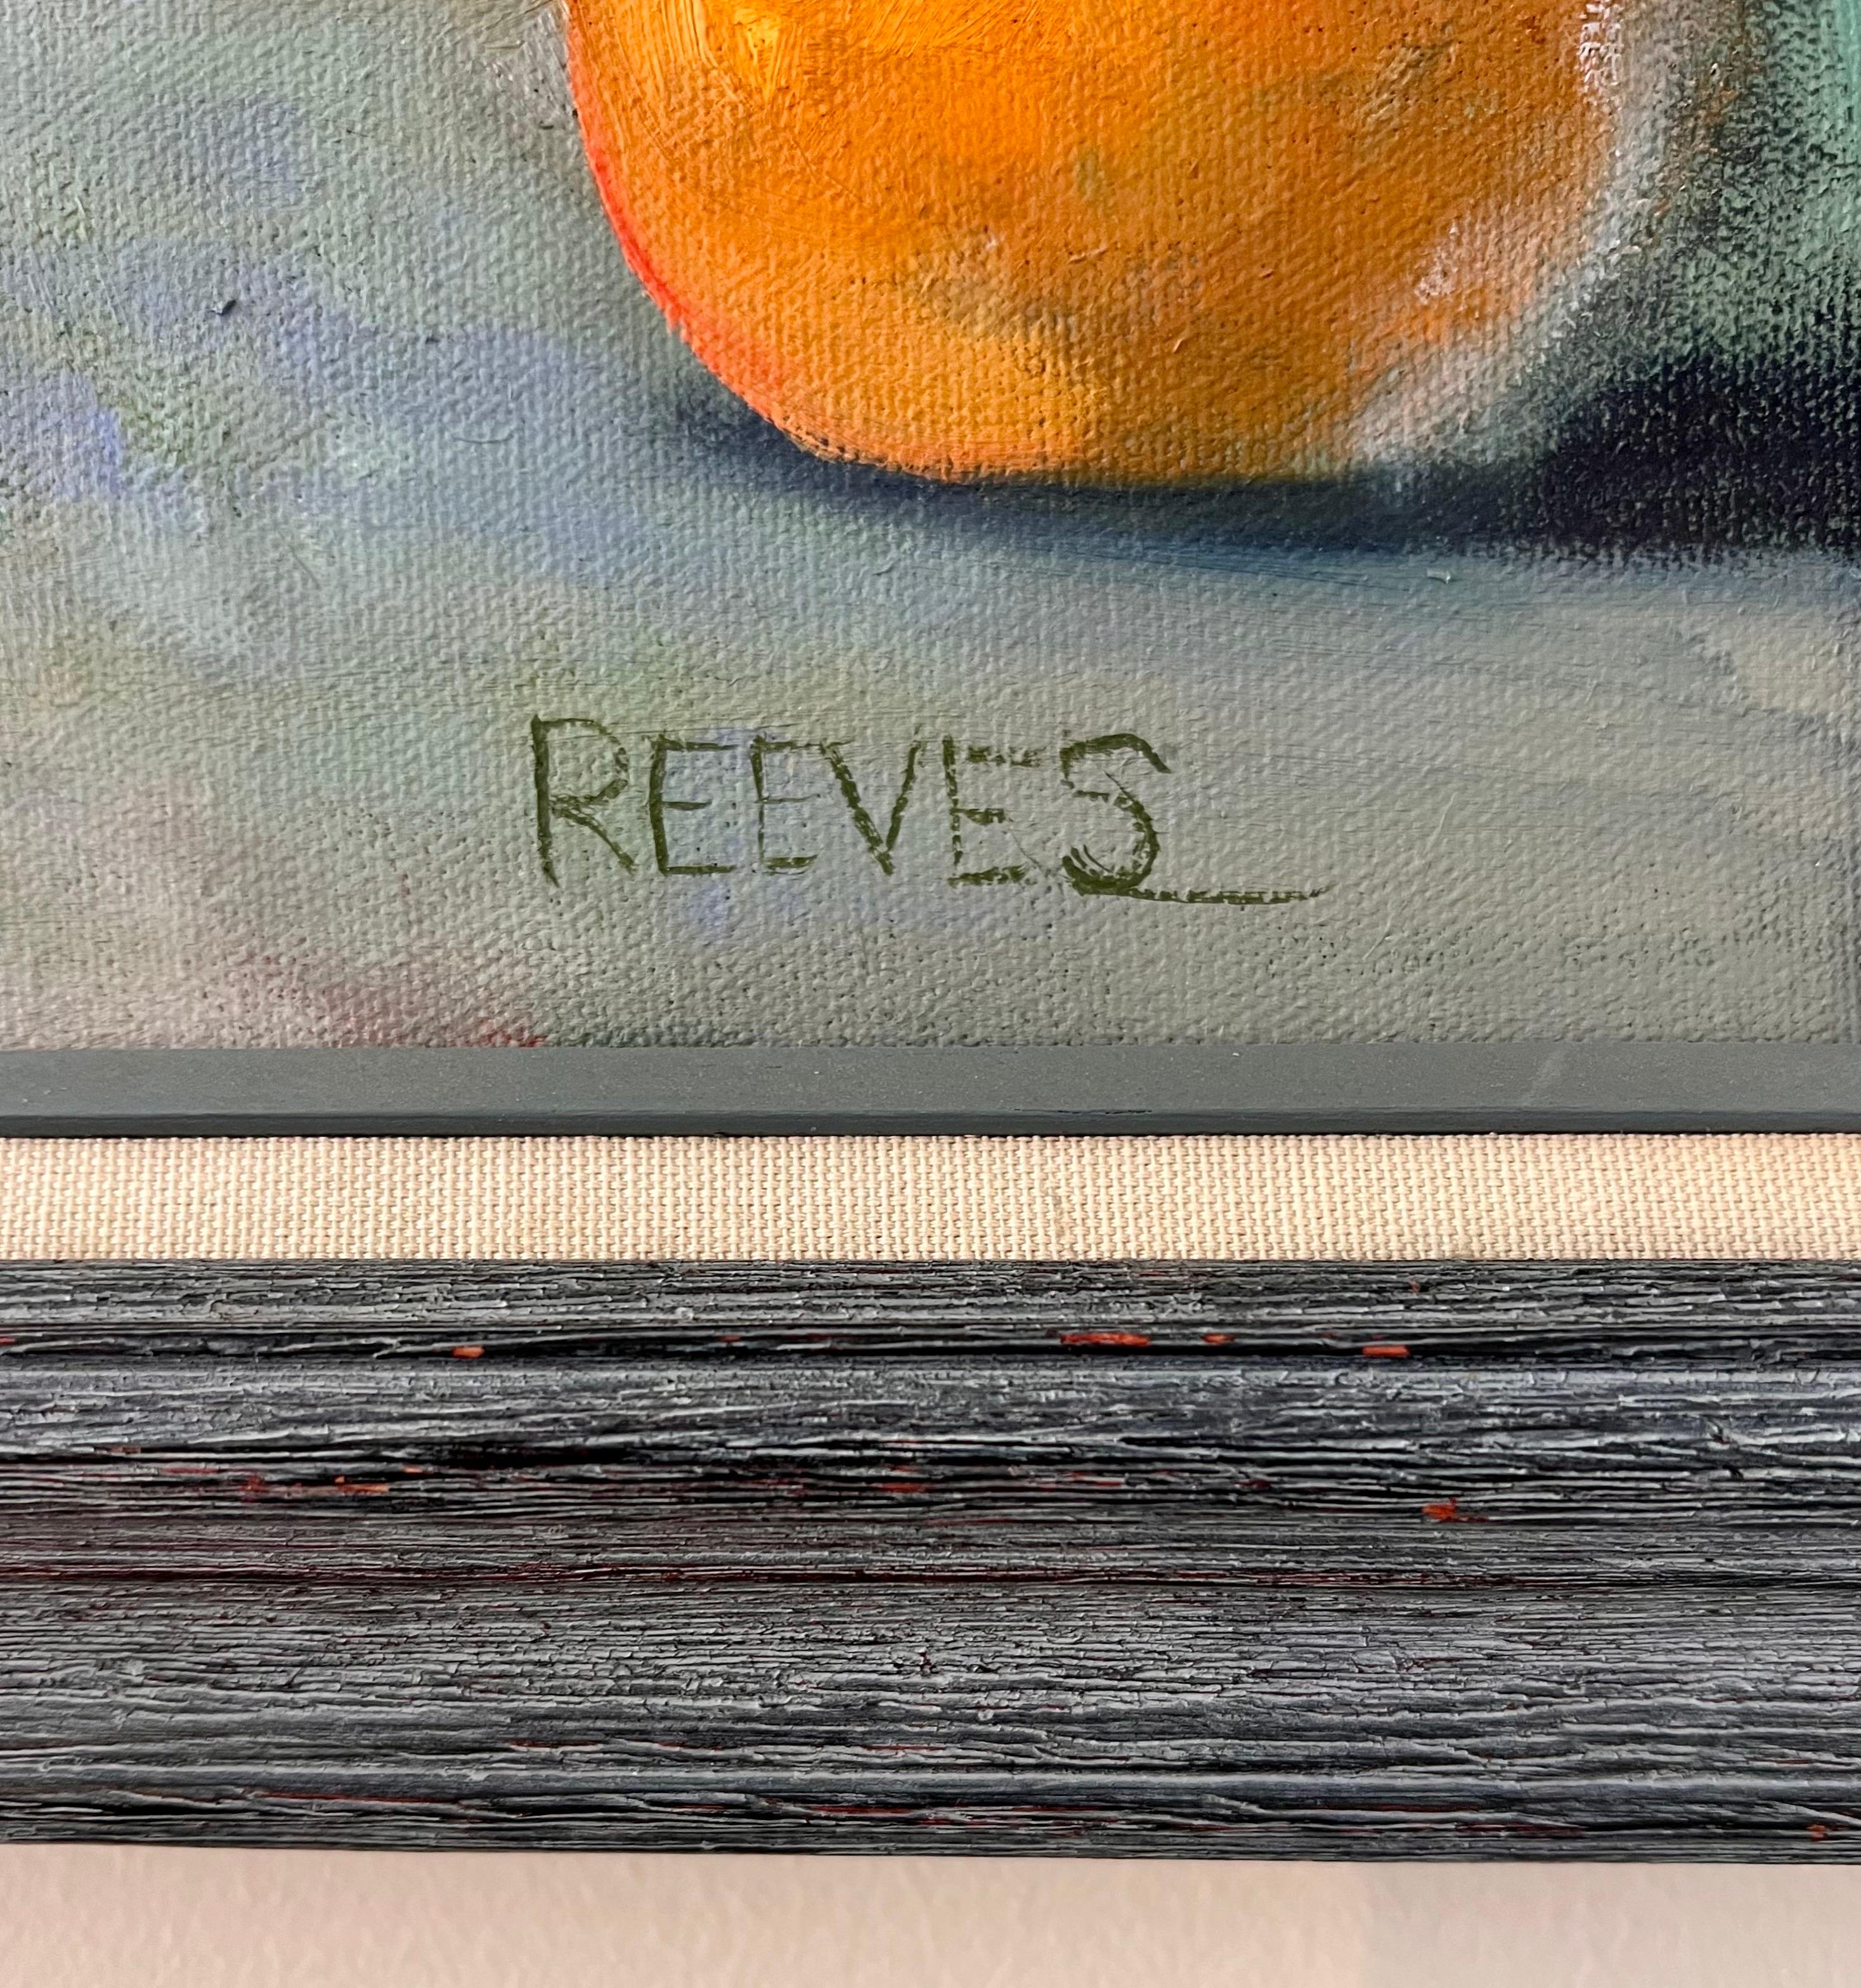 reeves oil painting